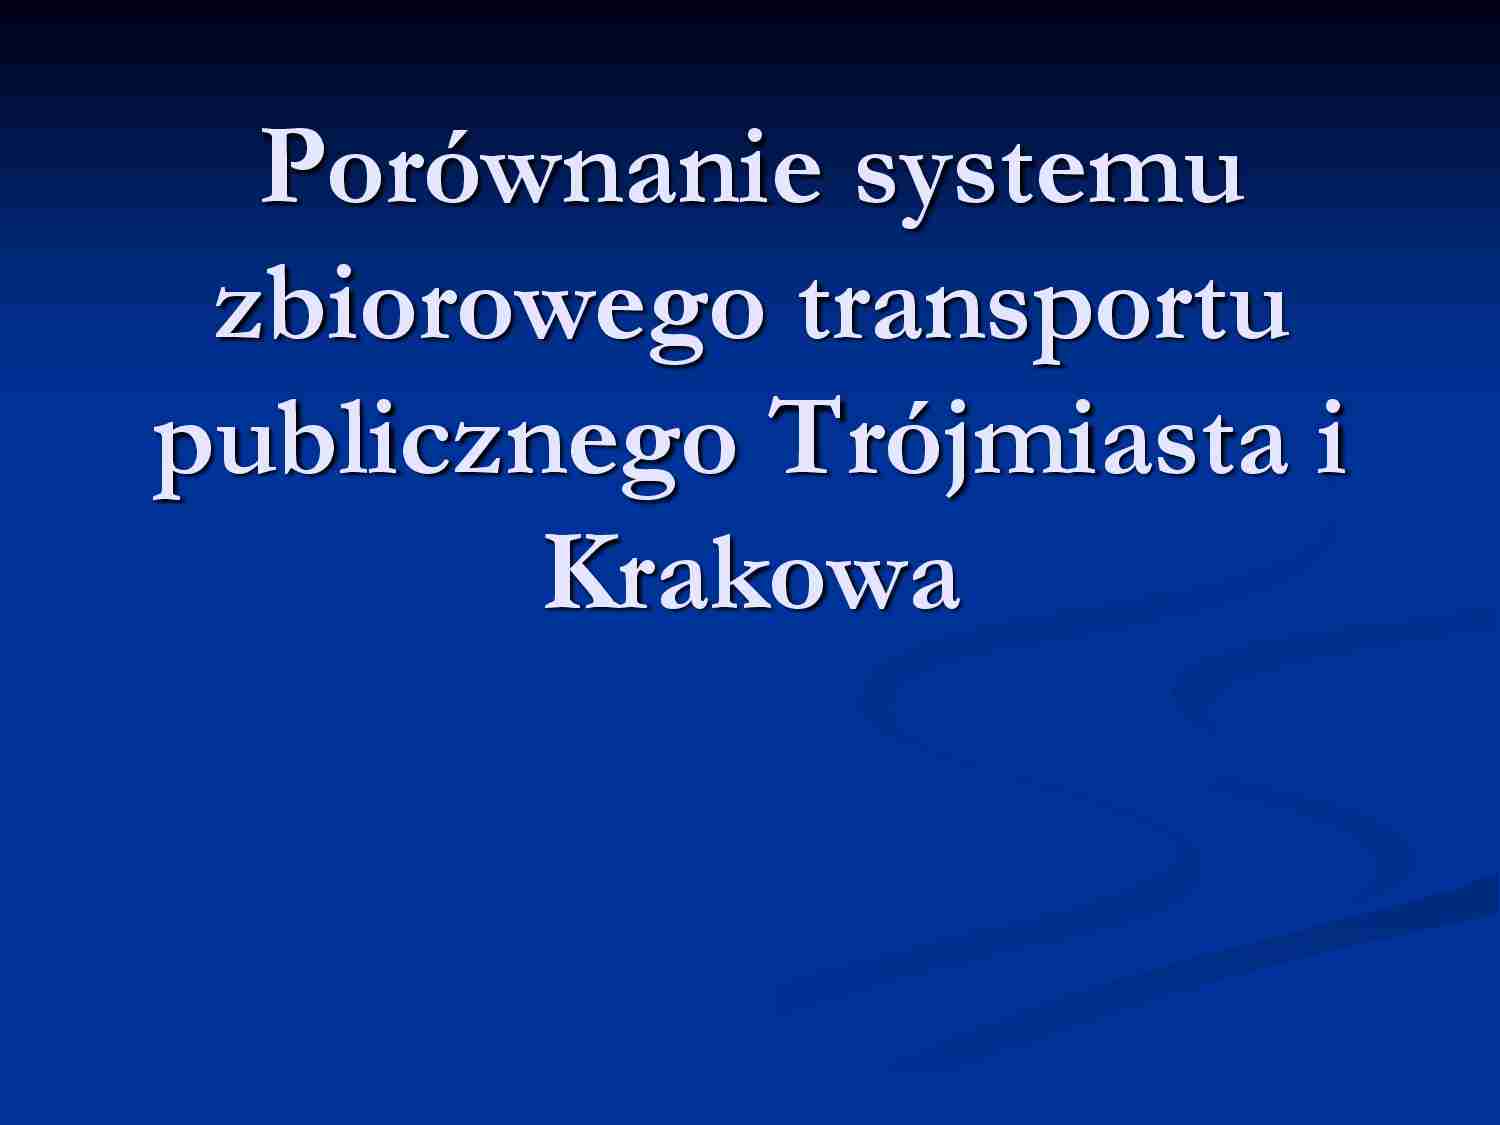 Zbiorowy transport publiczny Trójmiasta i Krakowa - strona 1